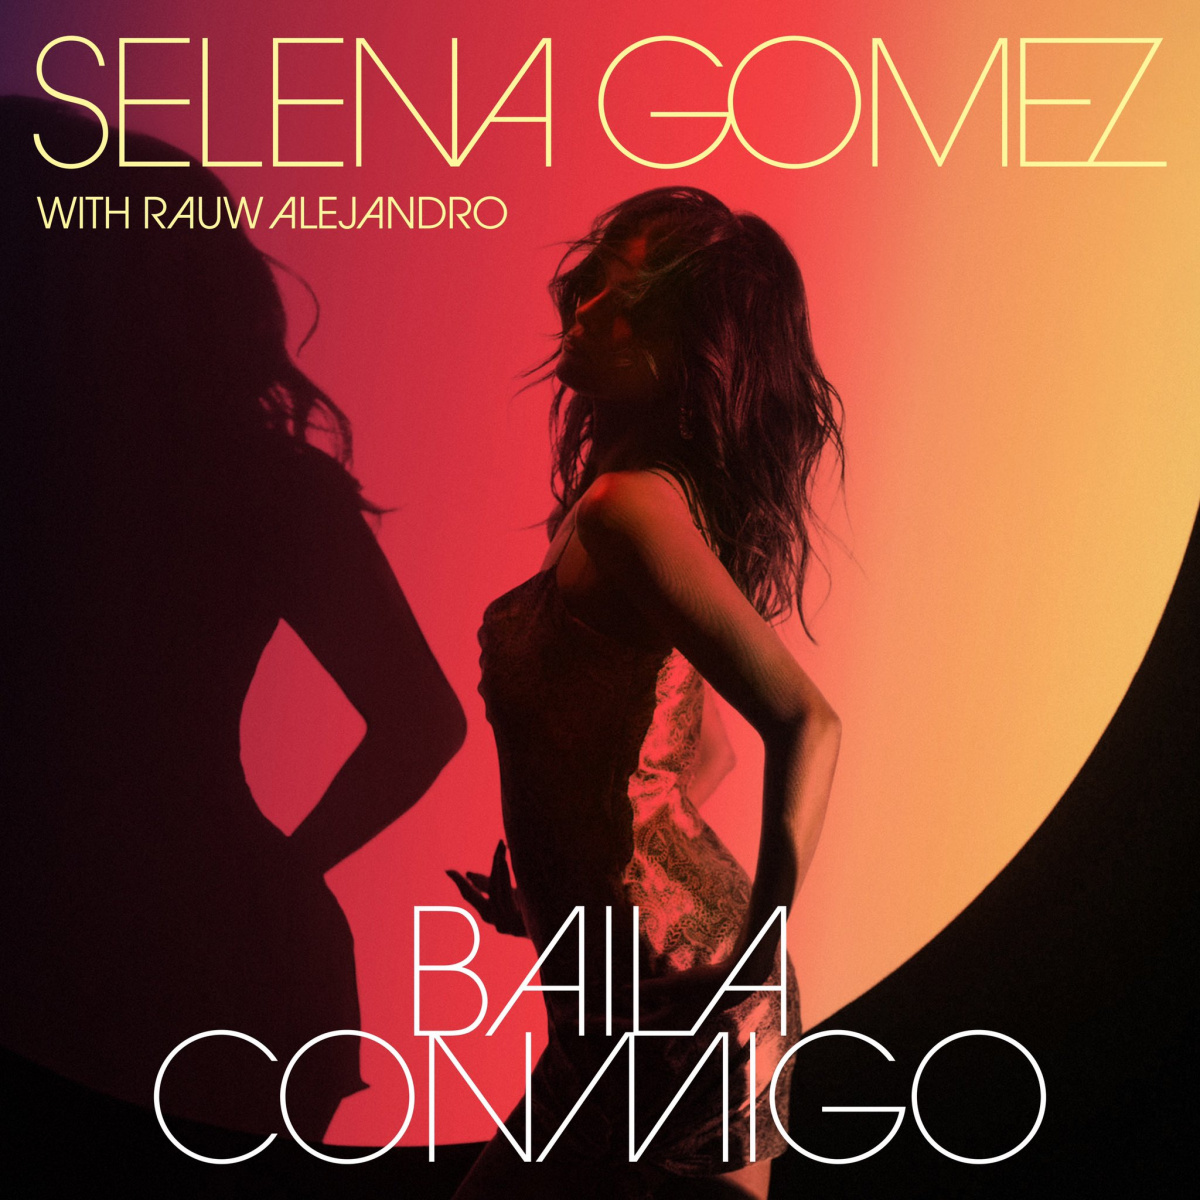 Selena Gomez, Rauw Alejandro - Baila Conmigo piano sheet music